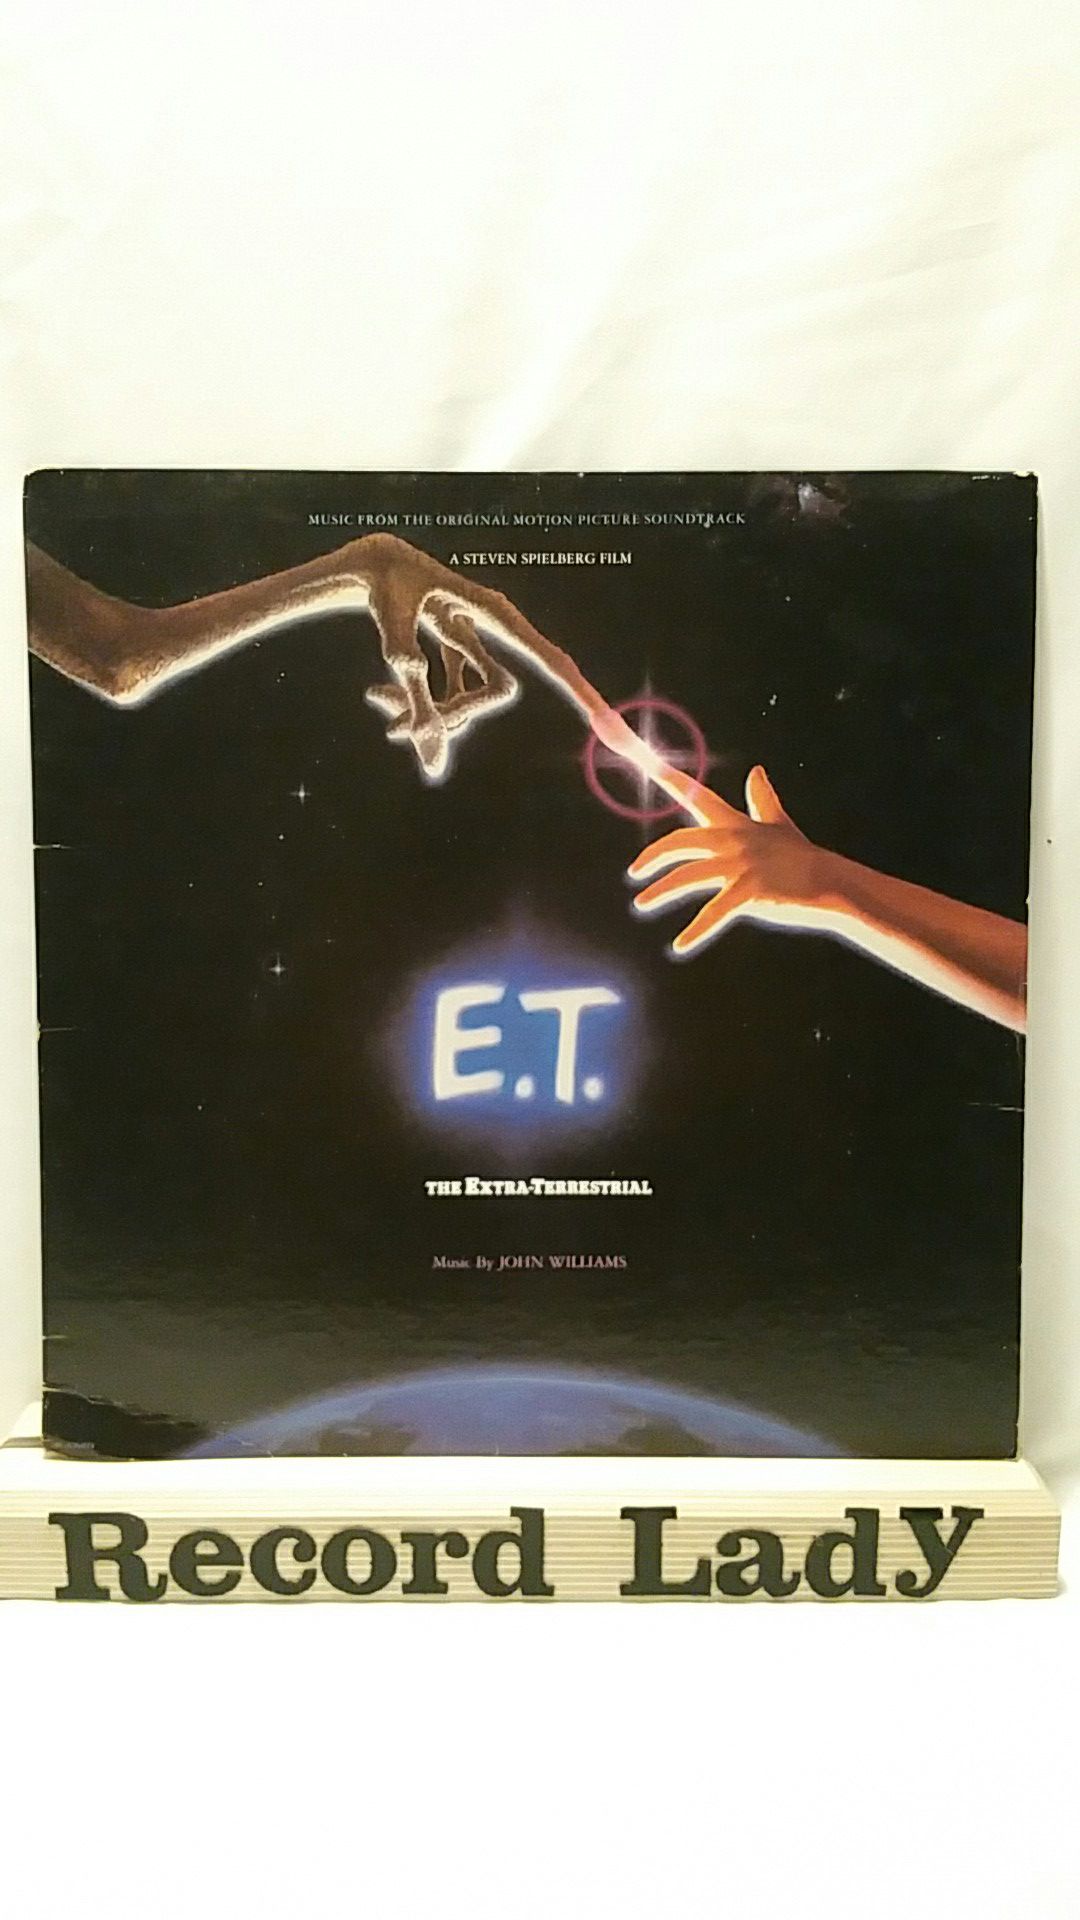 Steven Spielberg Film "E.T. Soundtrack" vinyl record